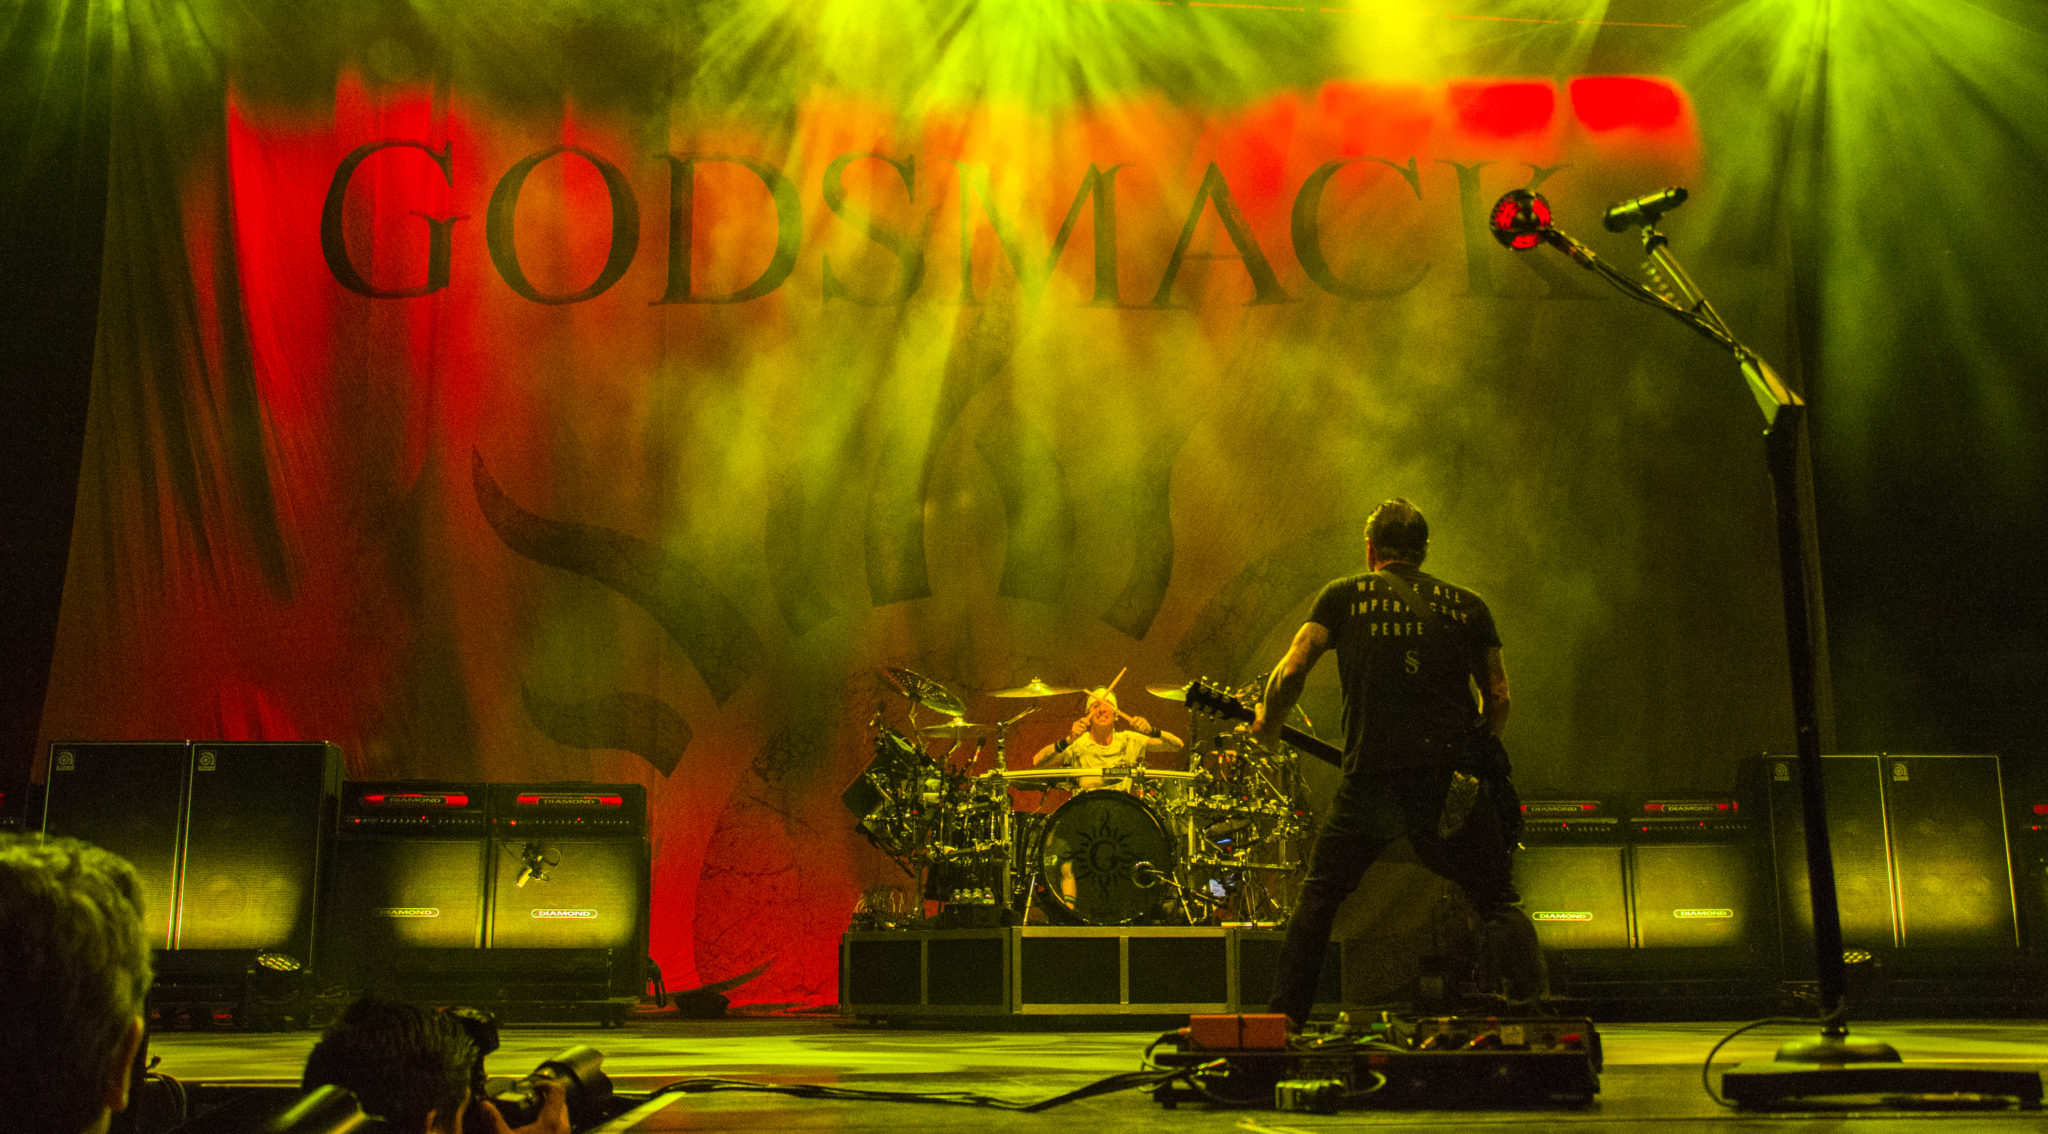 Concert Review Godsmack & Halestorm Rock Out West Palm Beach